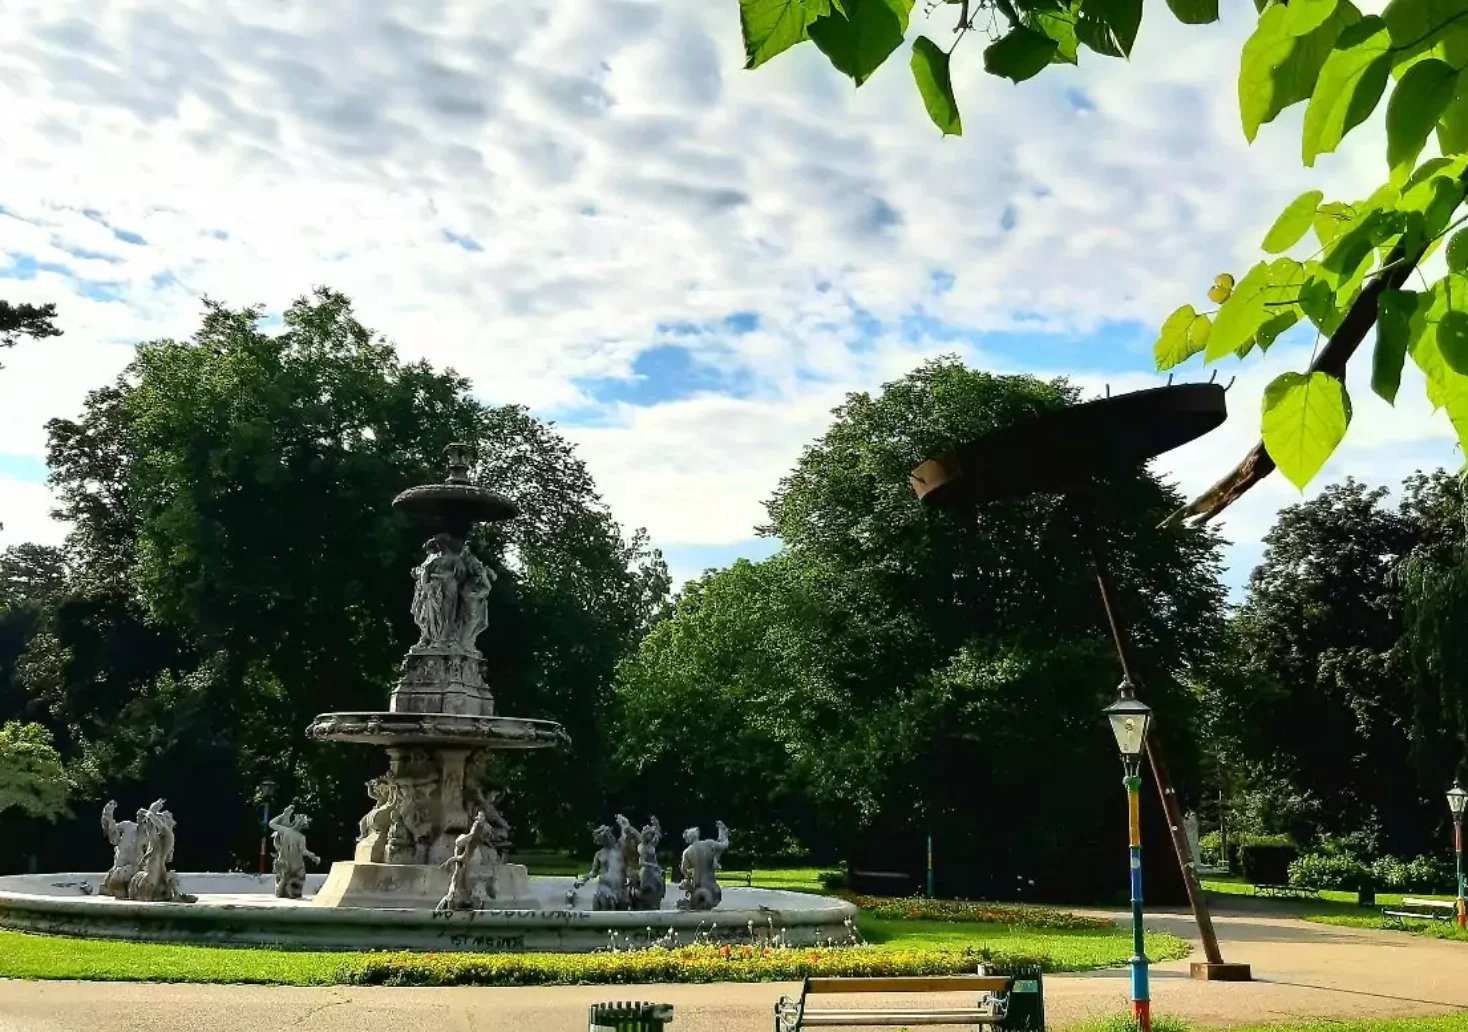 Bild auf 5min.at zeigt den Stadtparkbrunnen im Grazer Stadtpark.